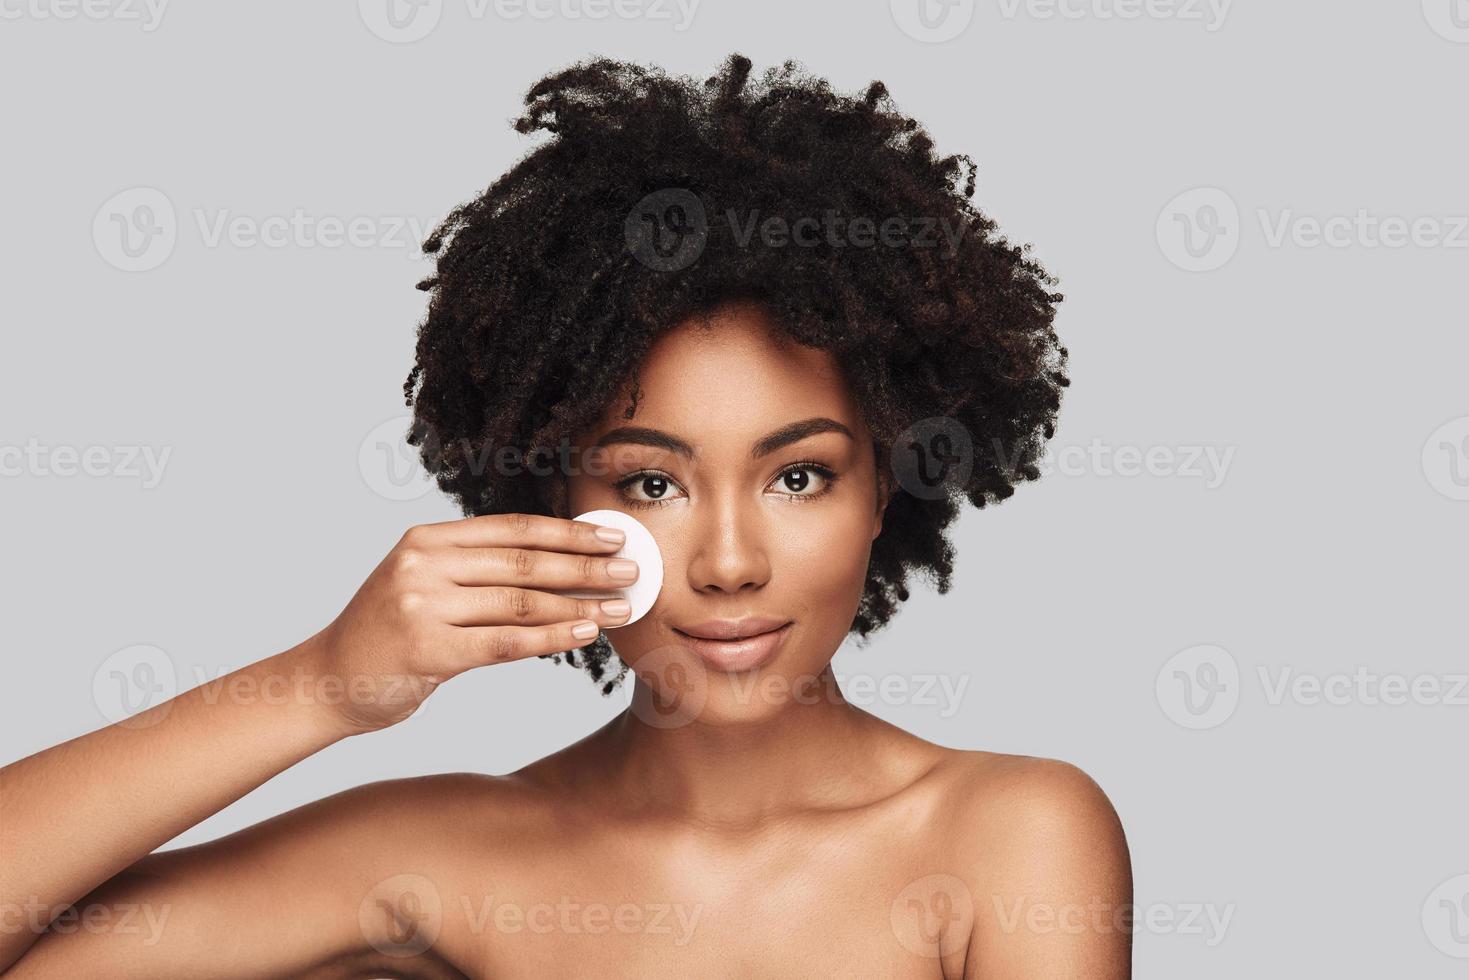 mimos atractiva joven africana aplicando esponja de limpieza y sonriendo mientras está de pie contra el fondo gris foto